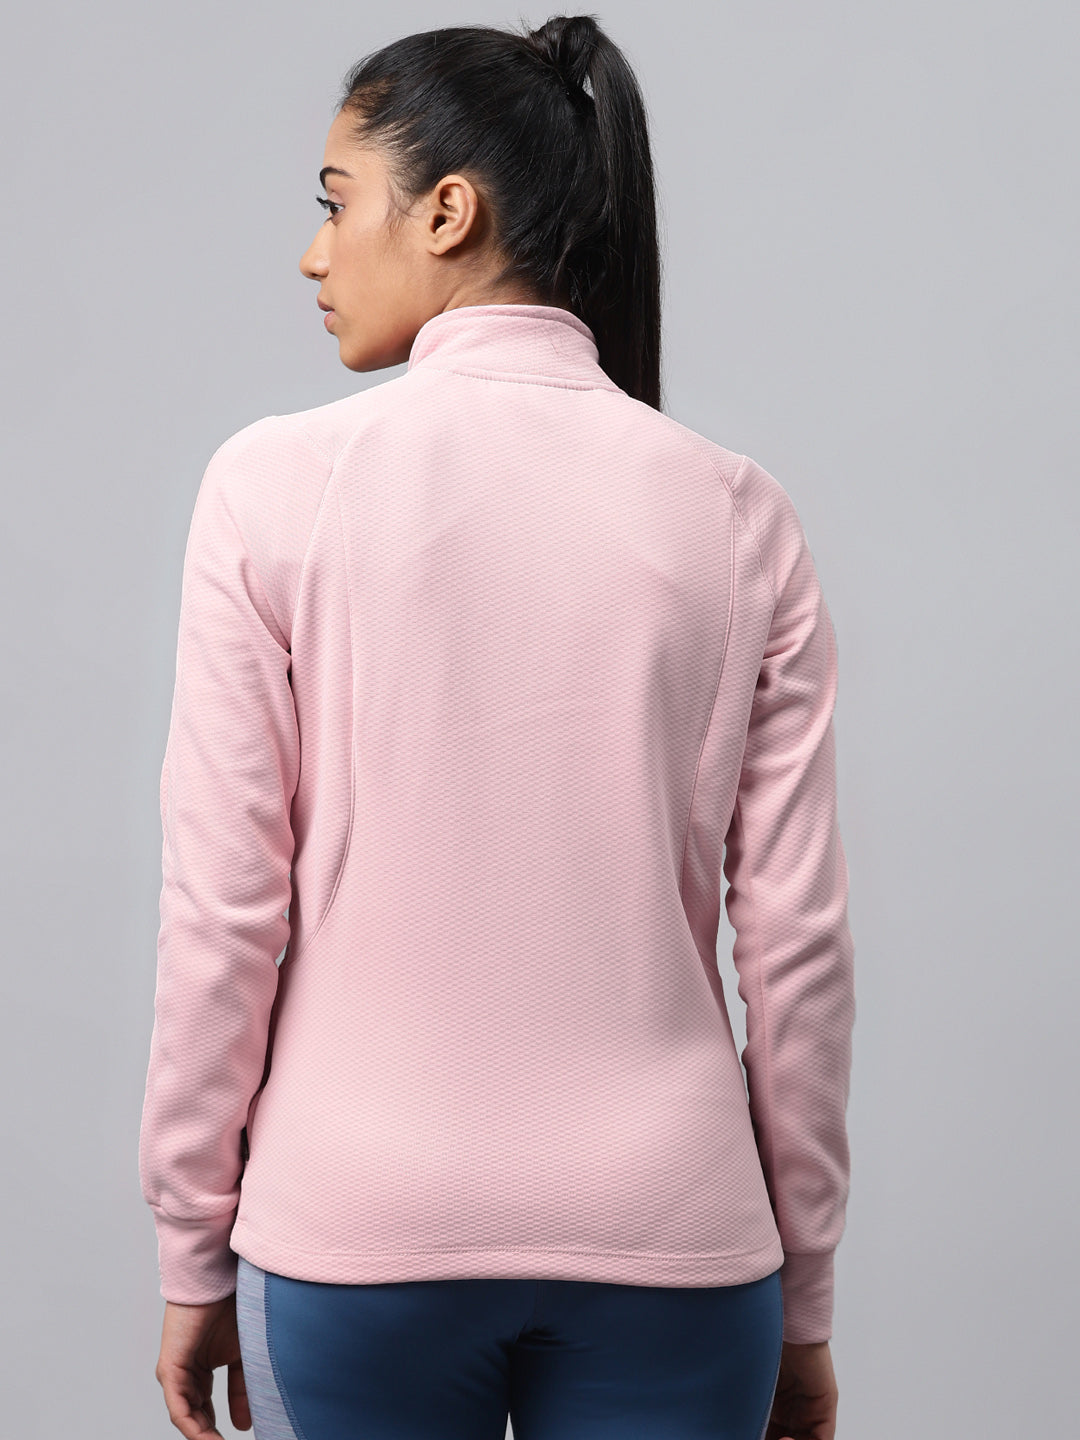 Alcis Women Pink Textured Sweatshirt